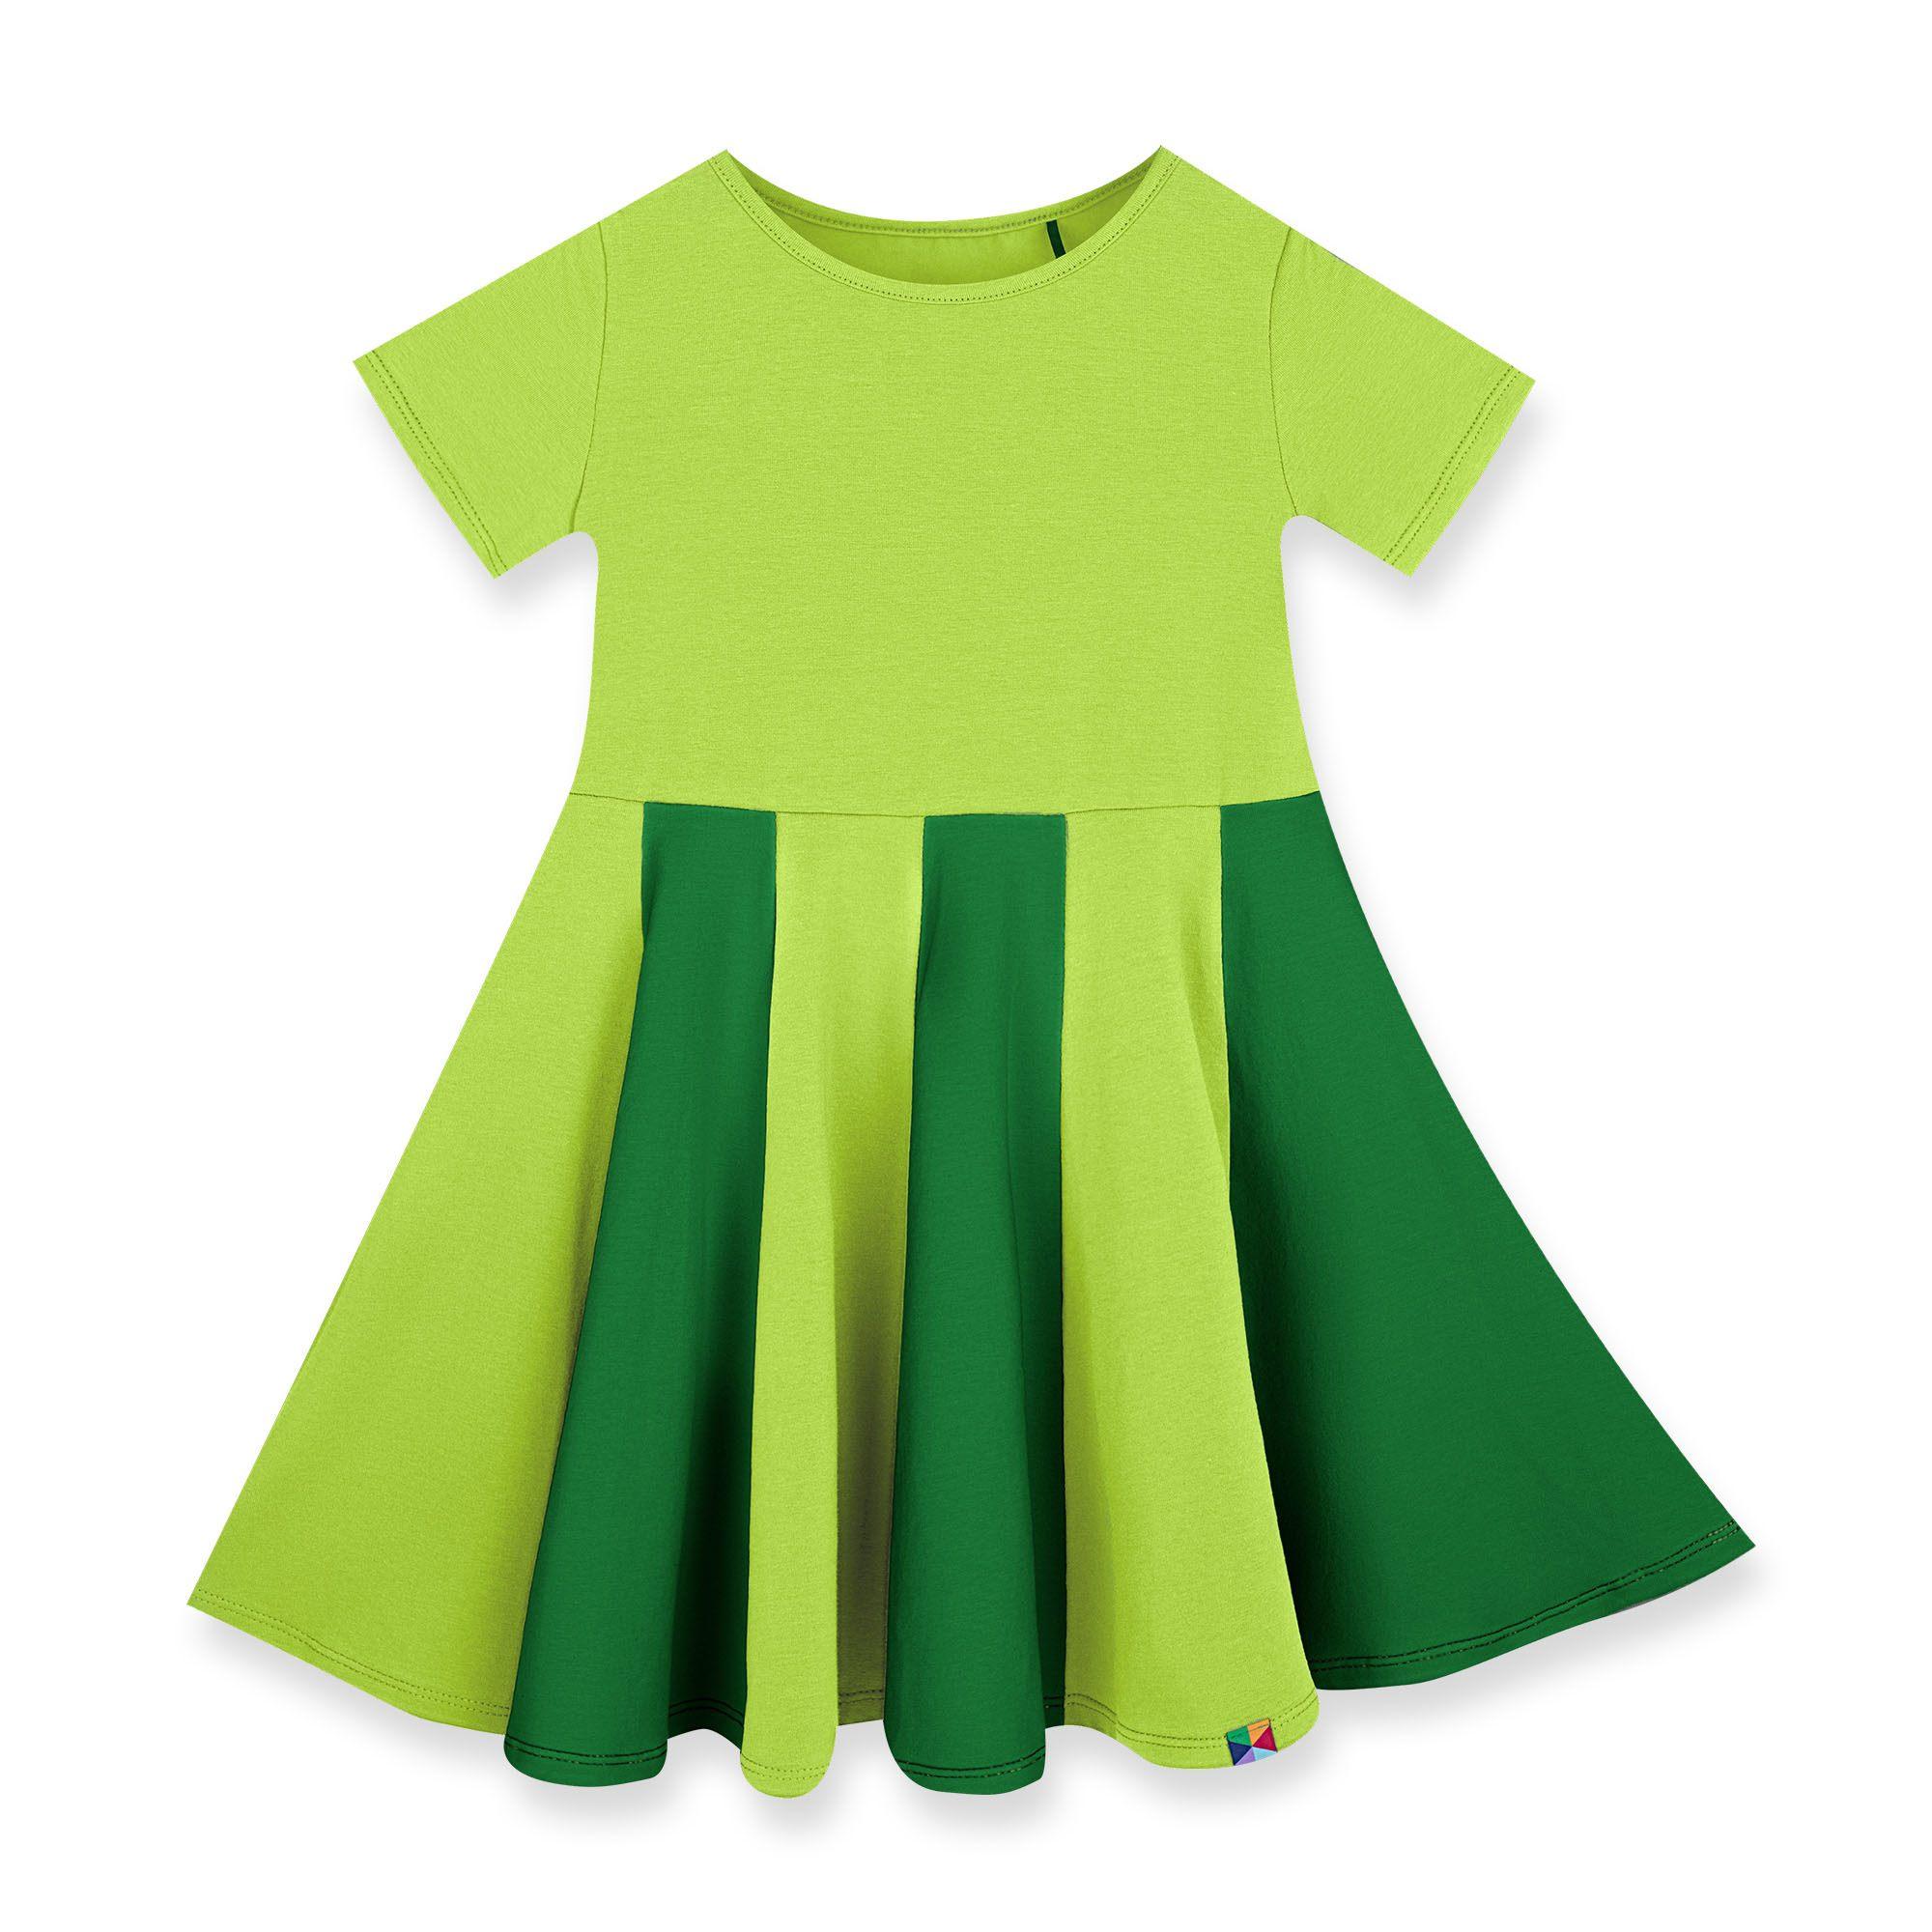 Limonkowo-zielona sukiena z kolorową falbaną